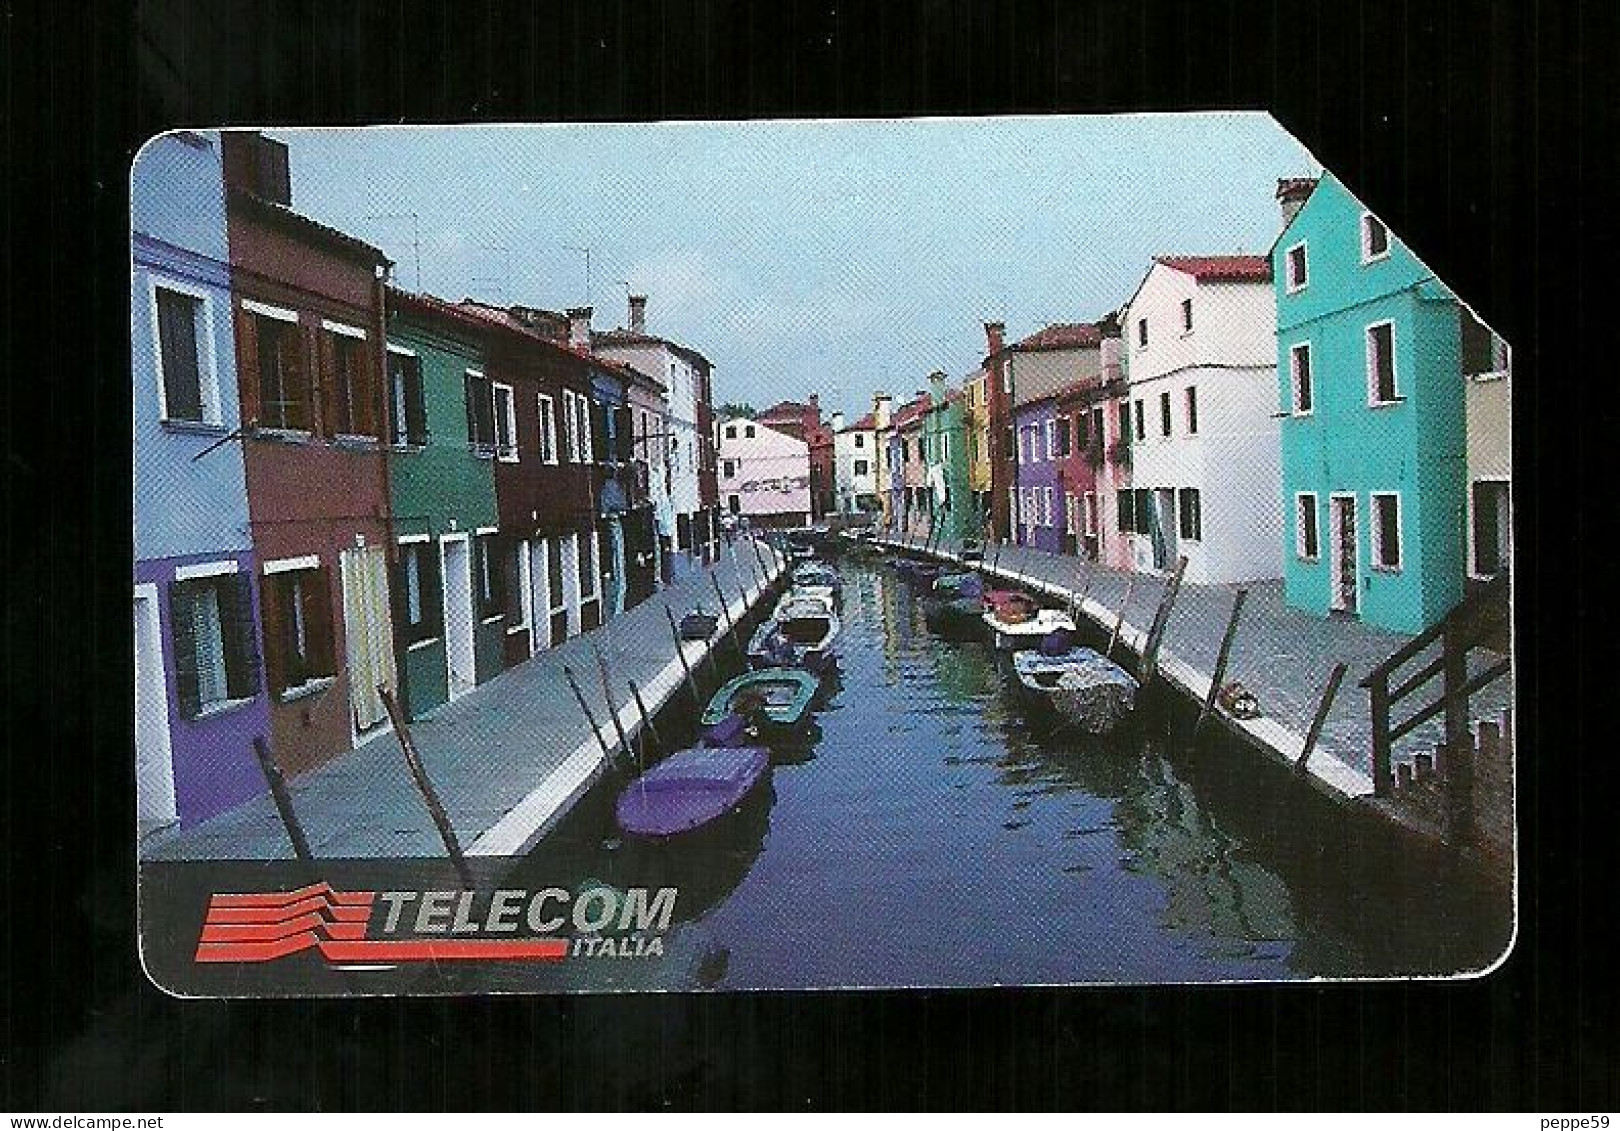 738 Golden - Linee D'italia - Veneto Da Lire 10.000 Telecom - Pubbliche Pubblicitarie